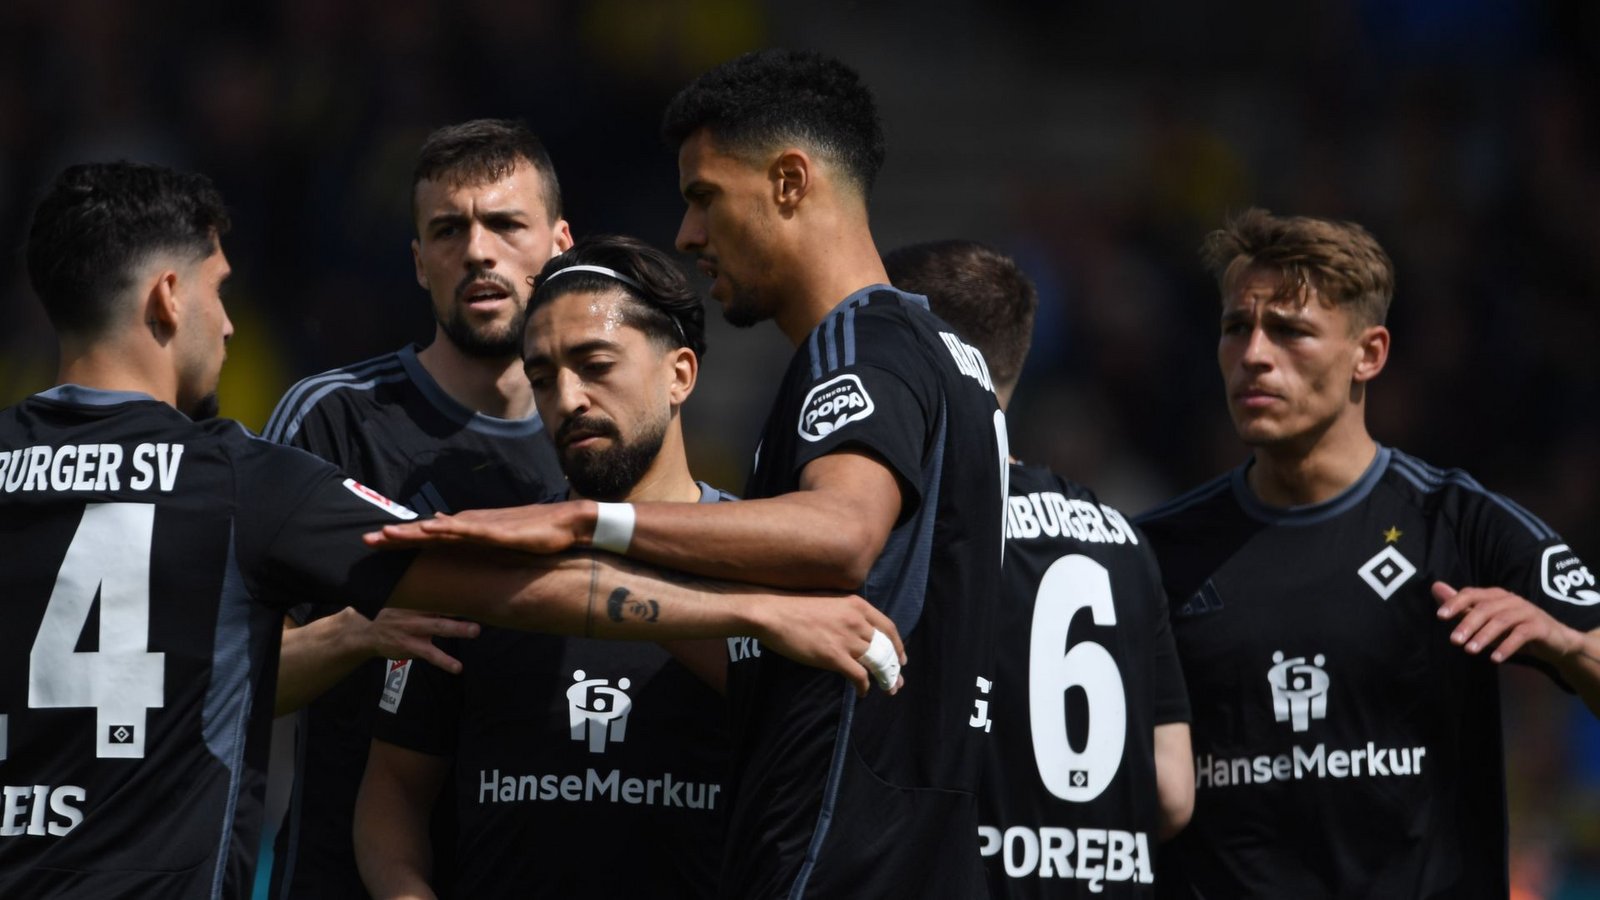 Der Hamburger SV feiert einen Sieg in Braunschweig und bewahrt die Chance auf den Relegationsrang.Foto: Swen Pförtner/dpa